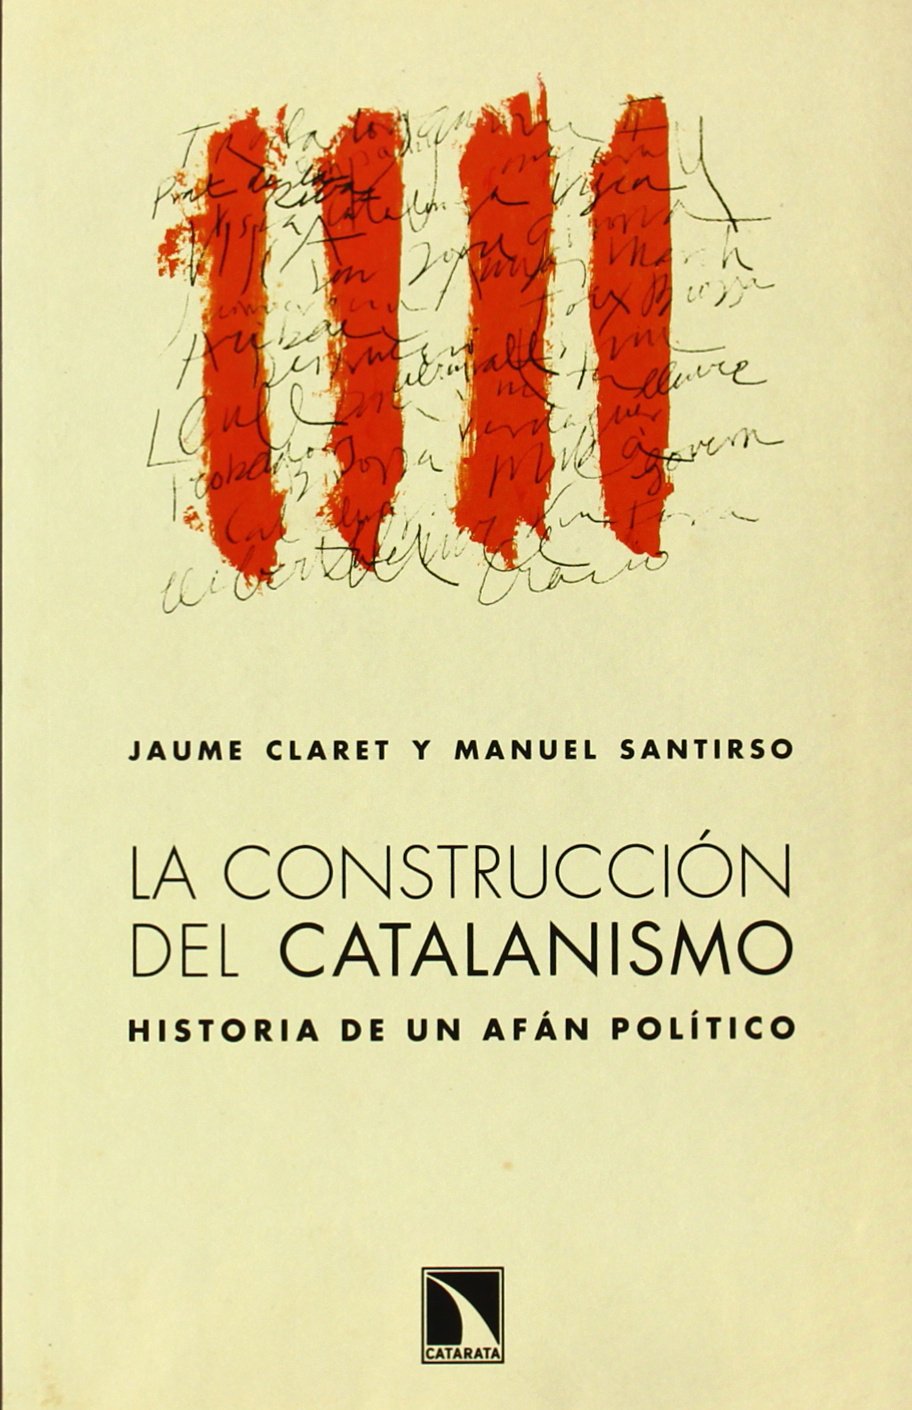 Imagen de portada del libro La construcción del catalanismo